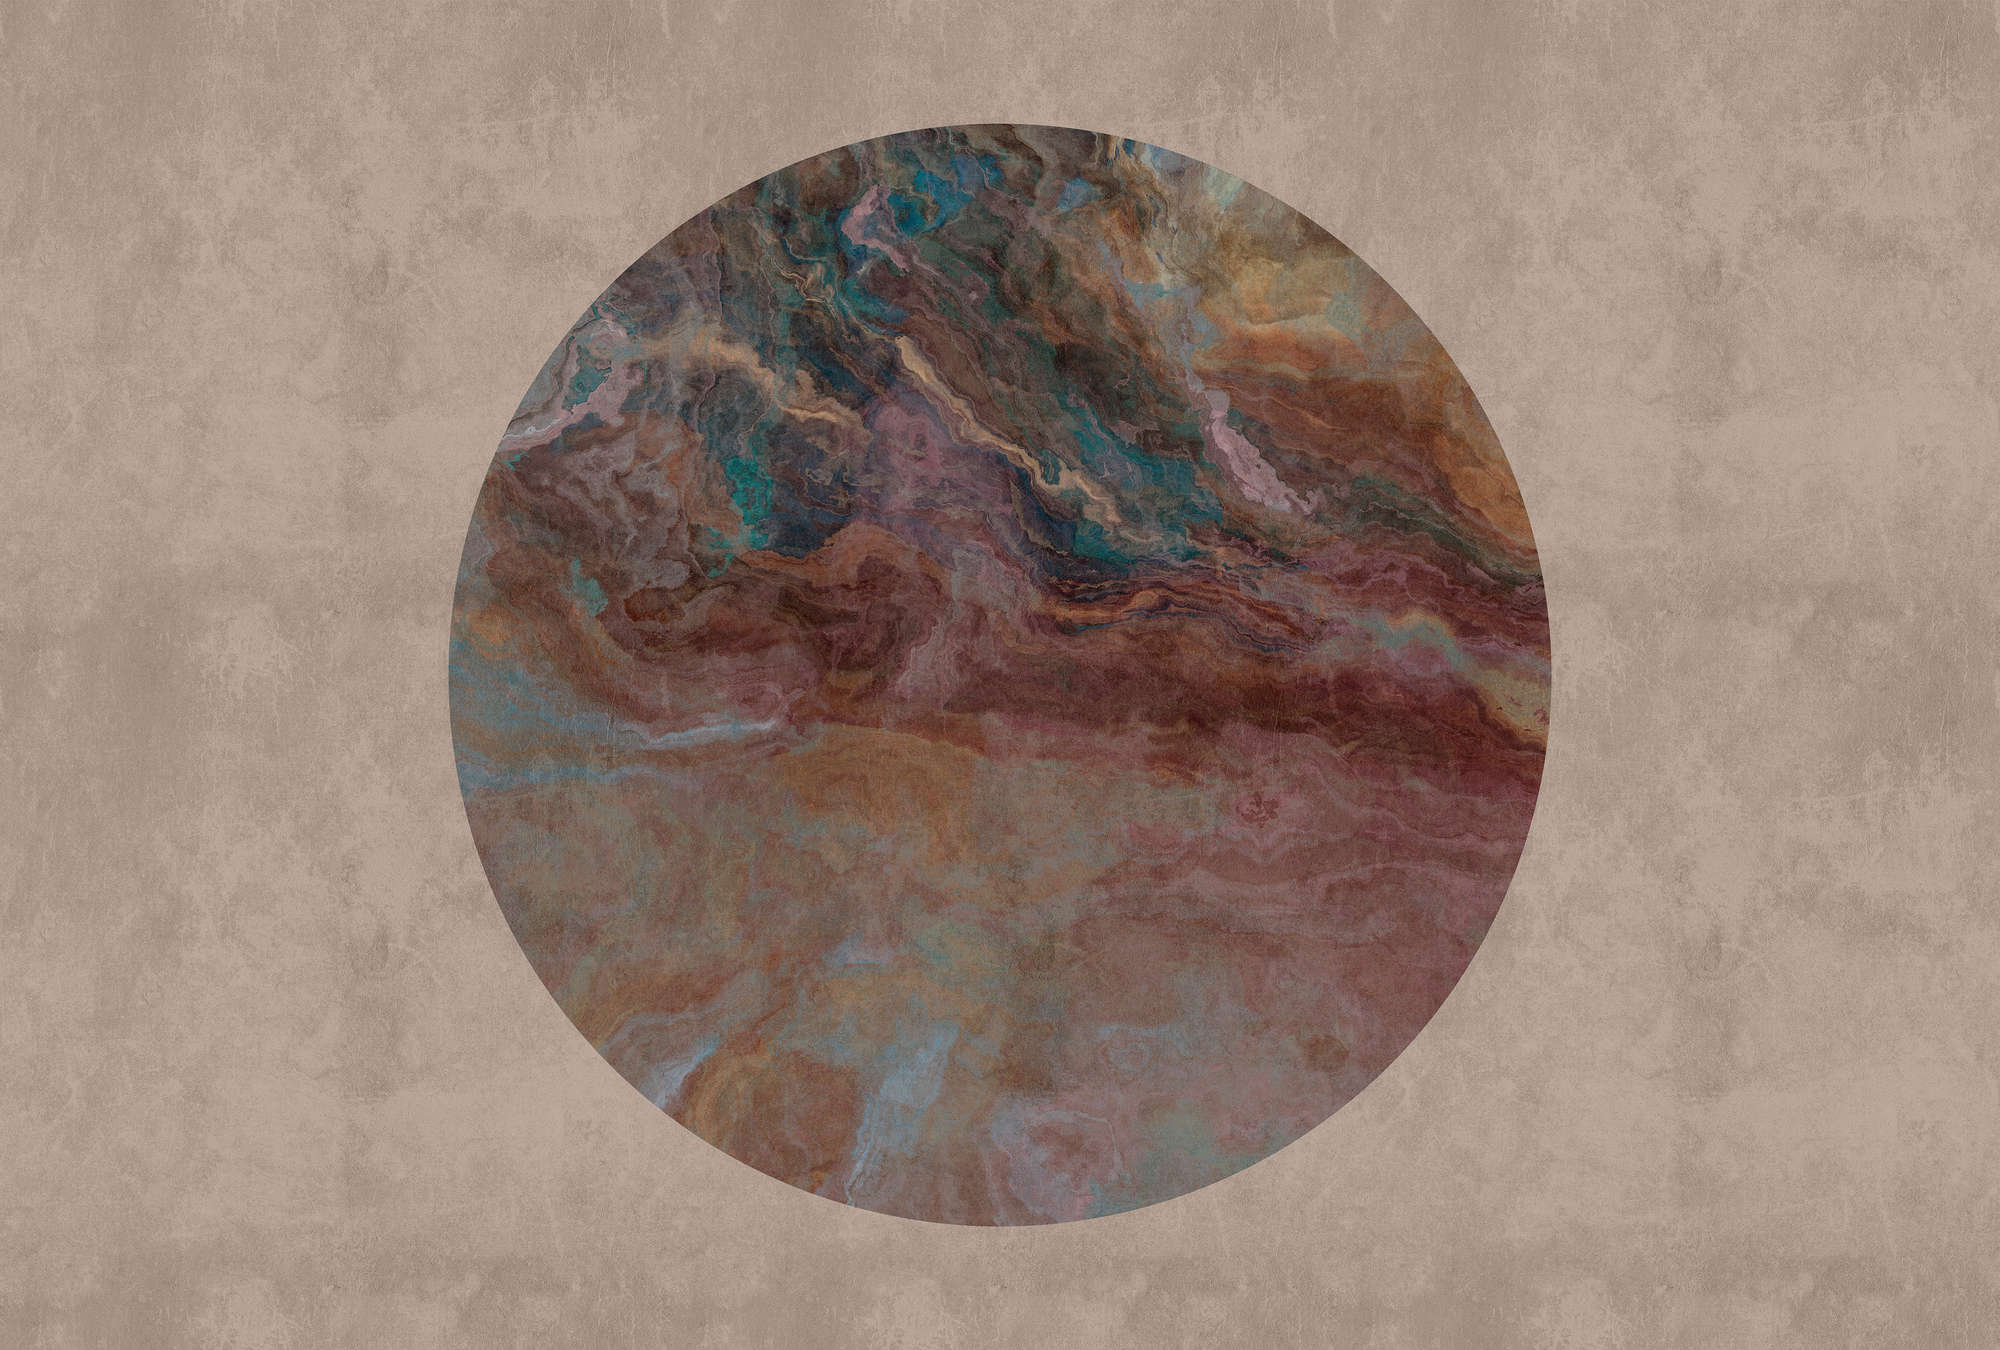             Jupiter 2 - Papier peint panoramique cercle de marbre coloré & aspect plâtre
        